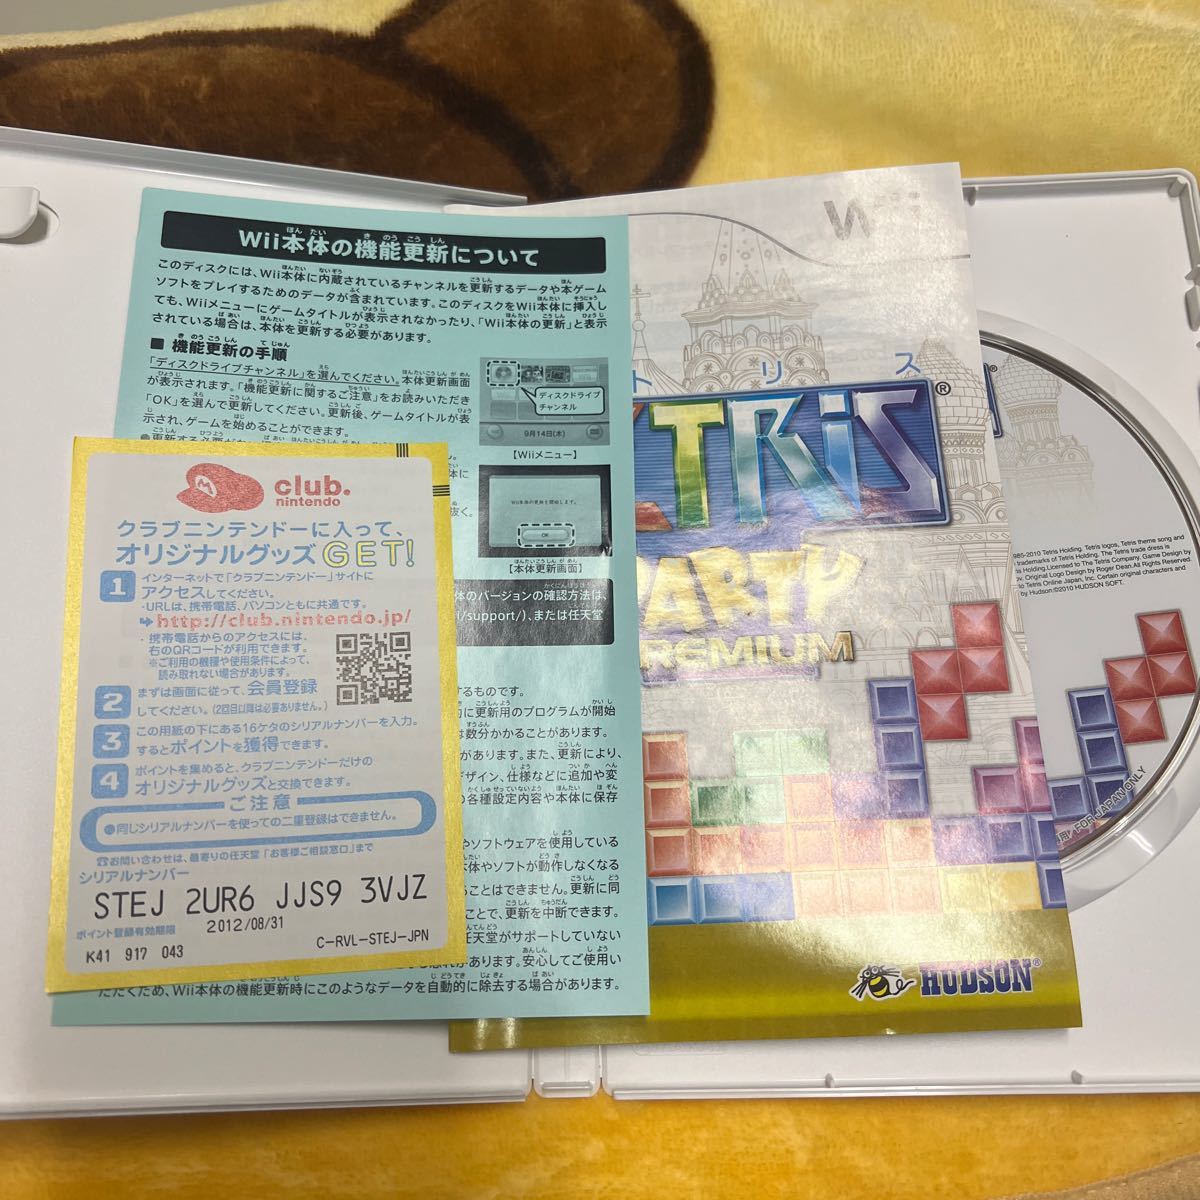  【Wii】 テトリスパーティープレミアムWii